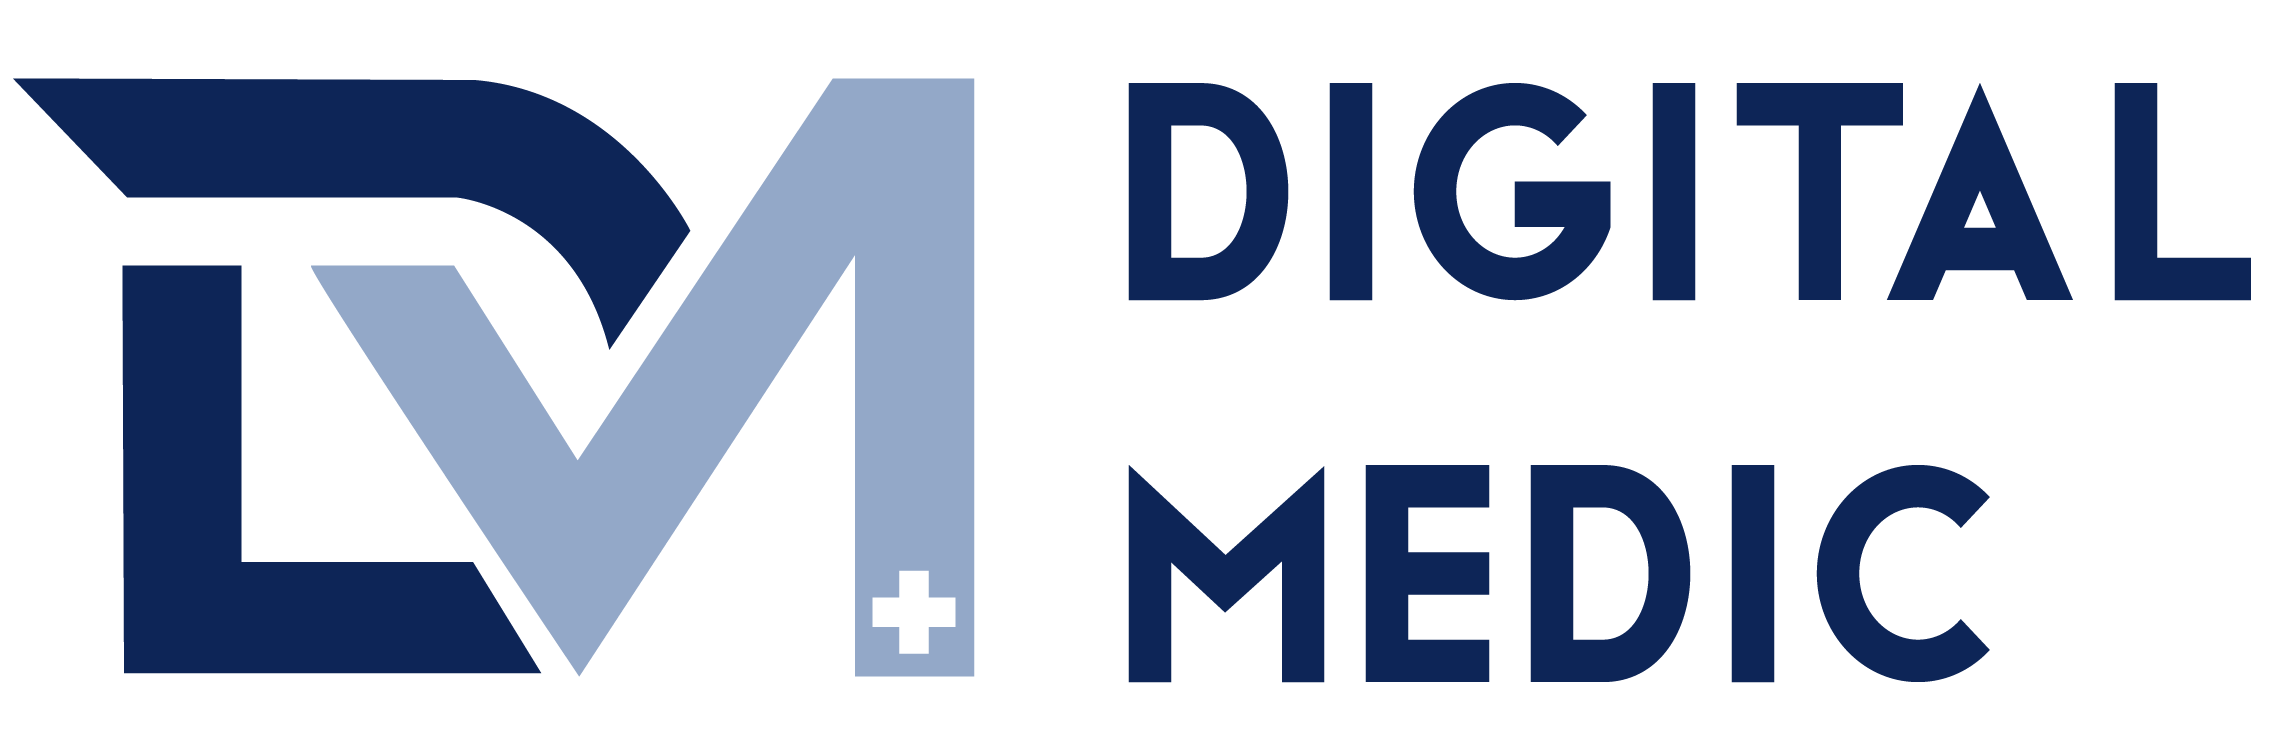 Digital medic logo (1) (1)